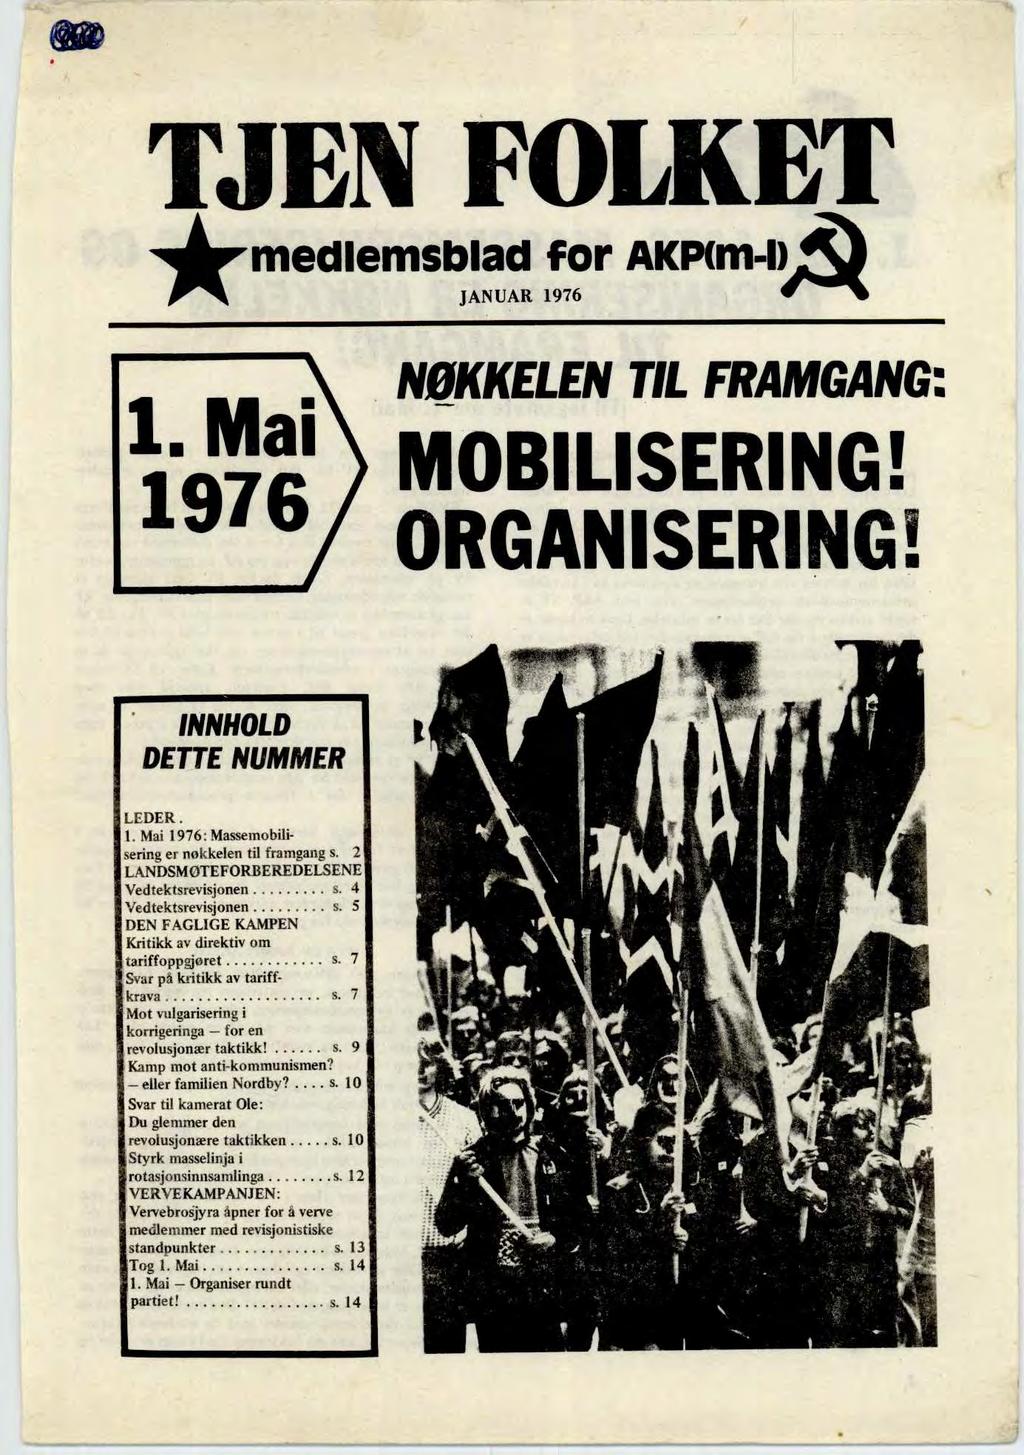 TJEN FOLKET medlemsblad for AKP(m-IA JANUAR 1976 1. Mai 1976 NØKKELEN TIL FRAMGANG: MOBILISERING! ORGANISERING! INNHOLD DETTE NUMMER LEDER. 1. Mai 1976: Massemobilisering er nøkkelen til framgang s.